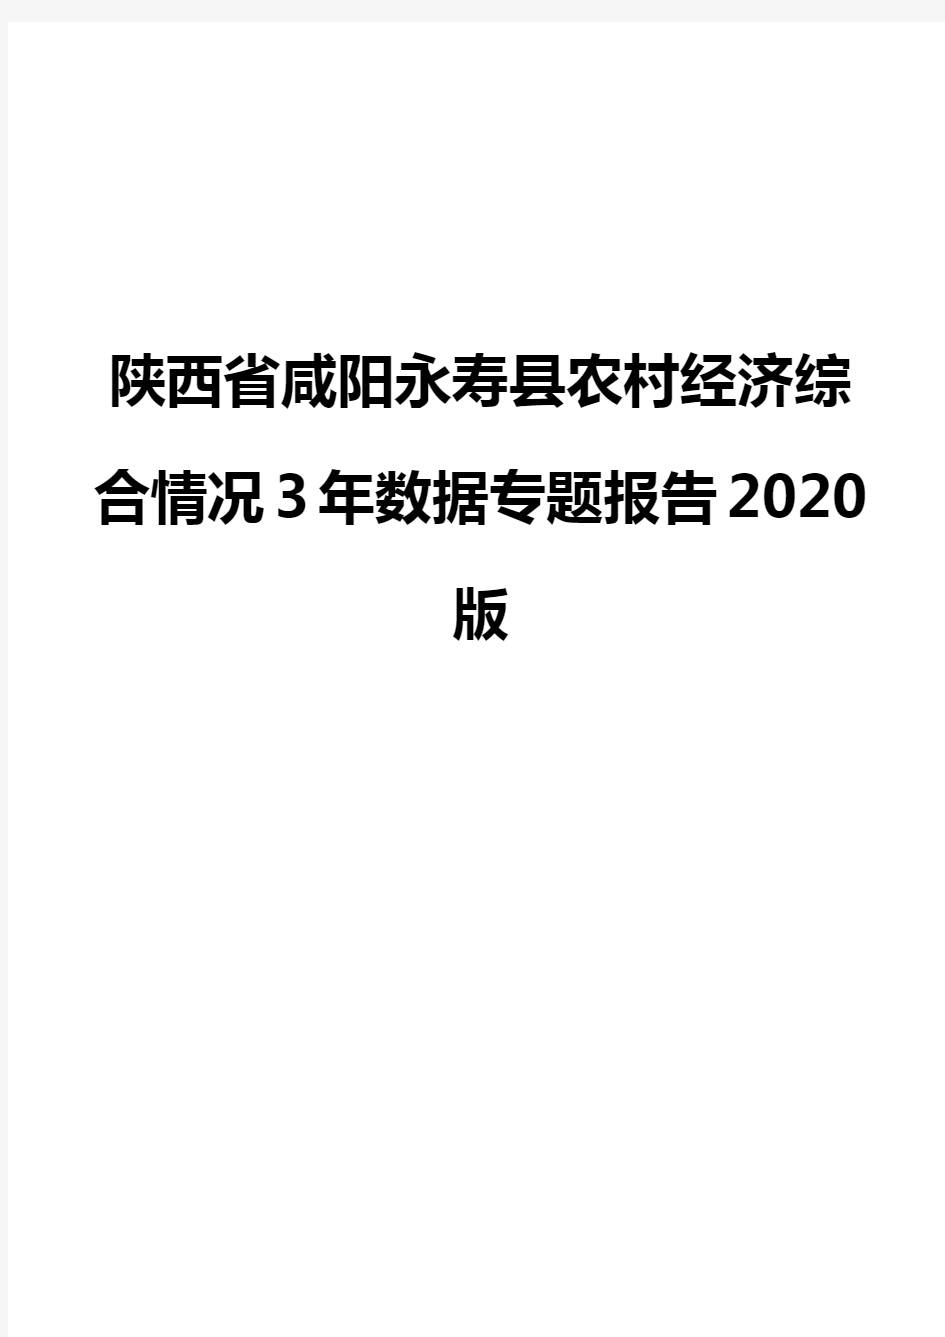 陕西省咸阳永寿县农村经济综合情况3年数据专题报告2020版